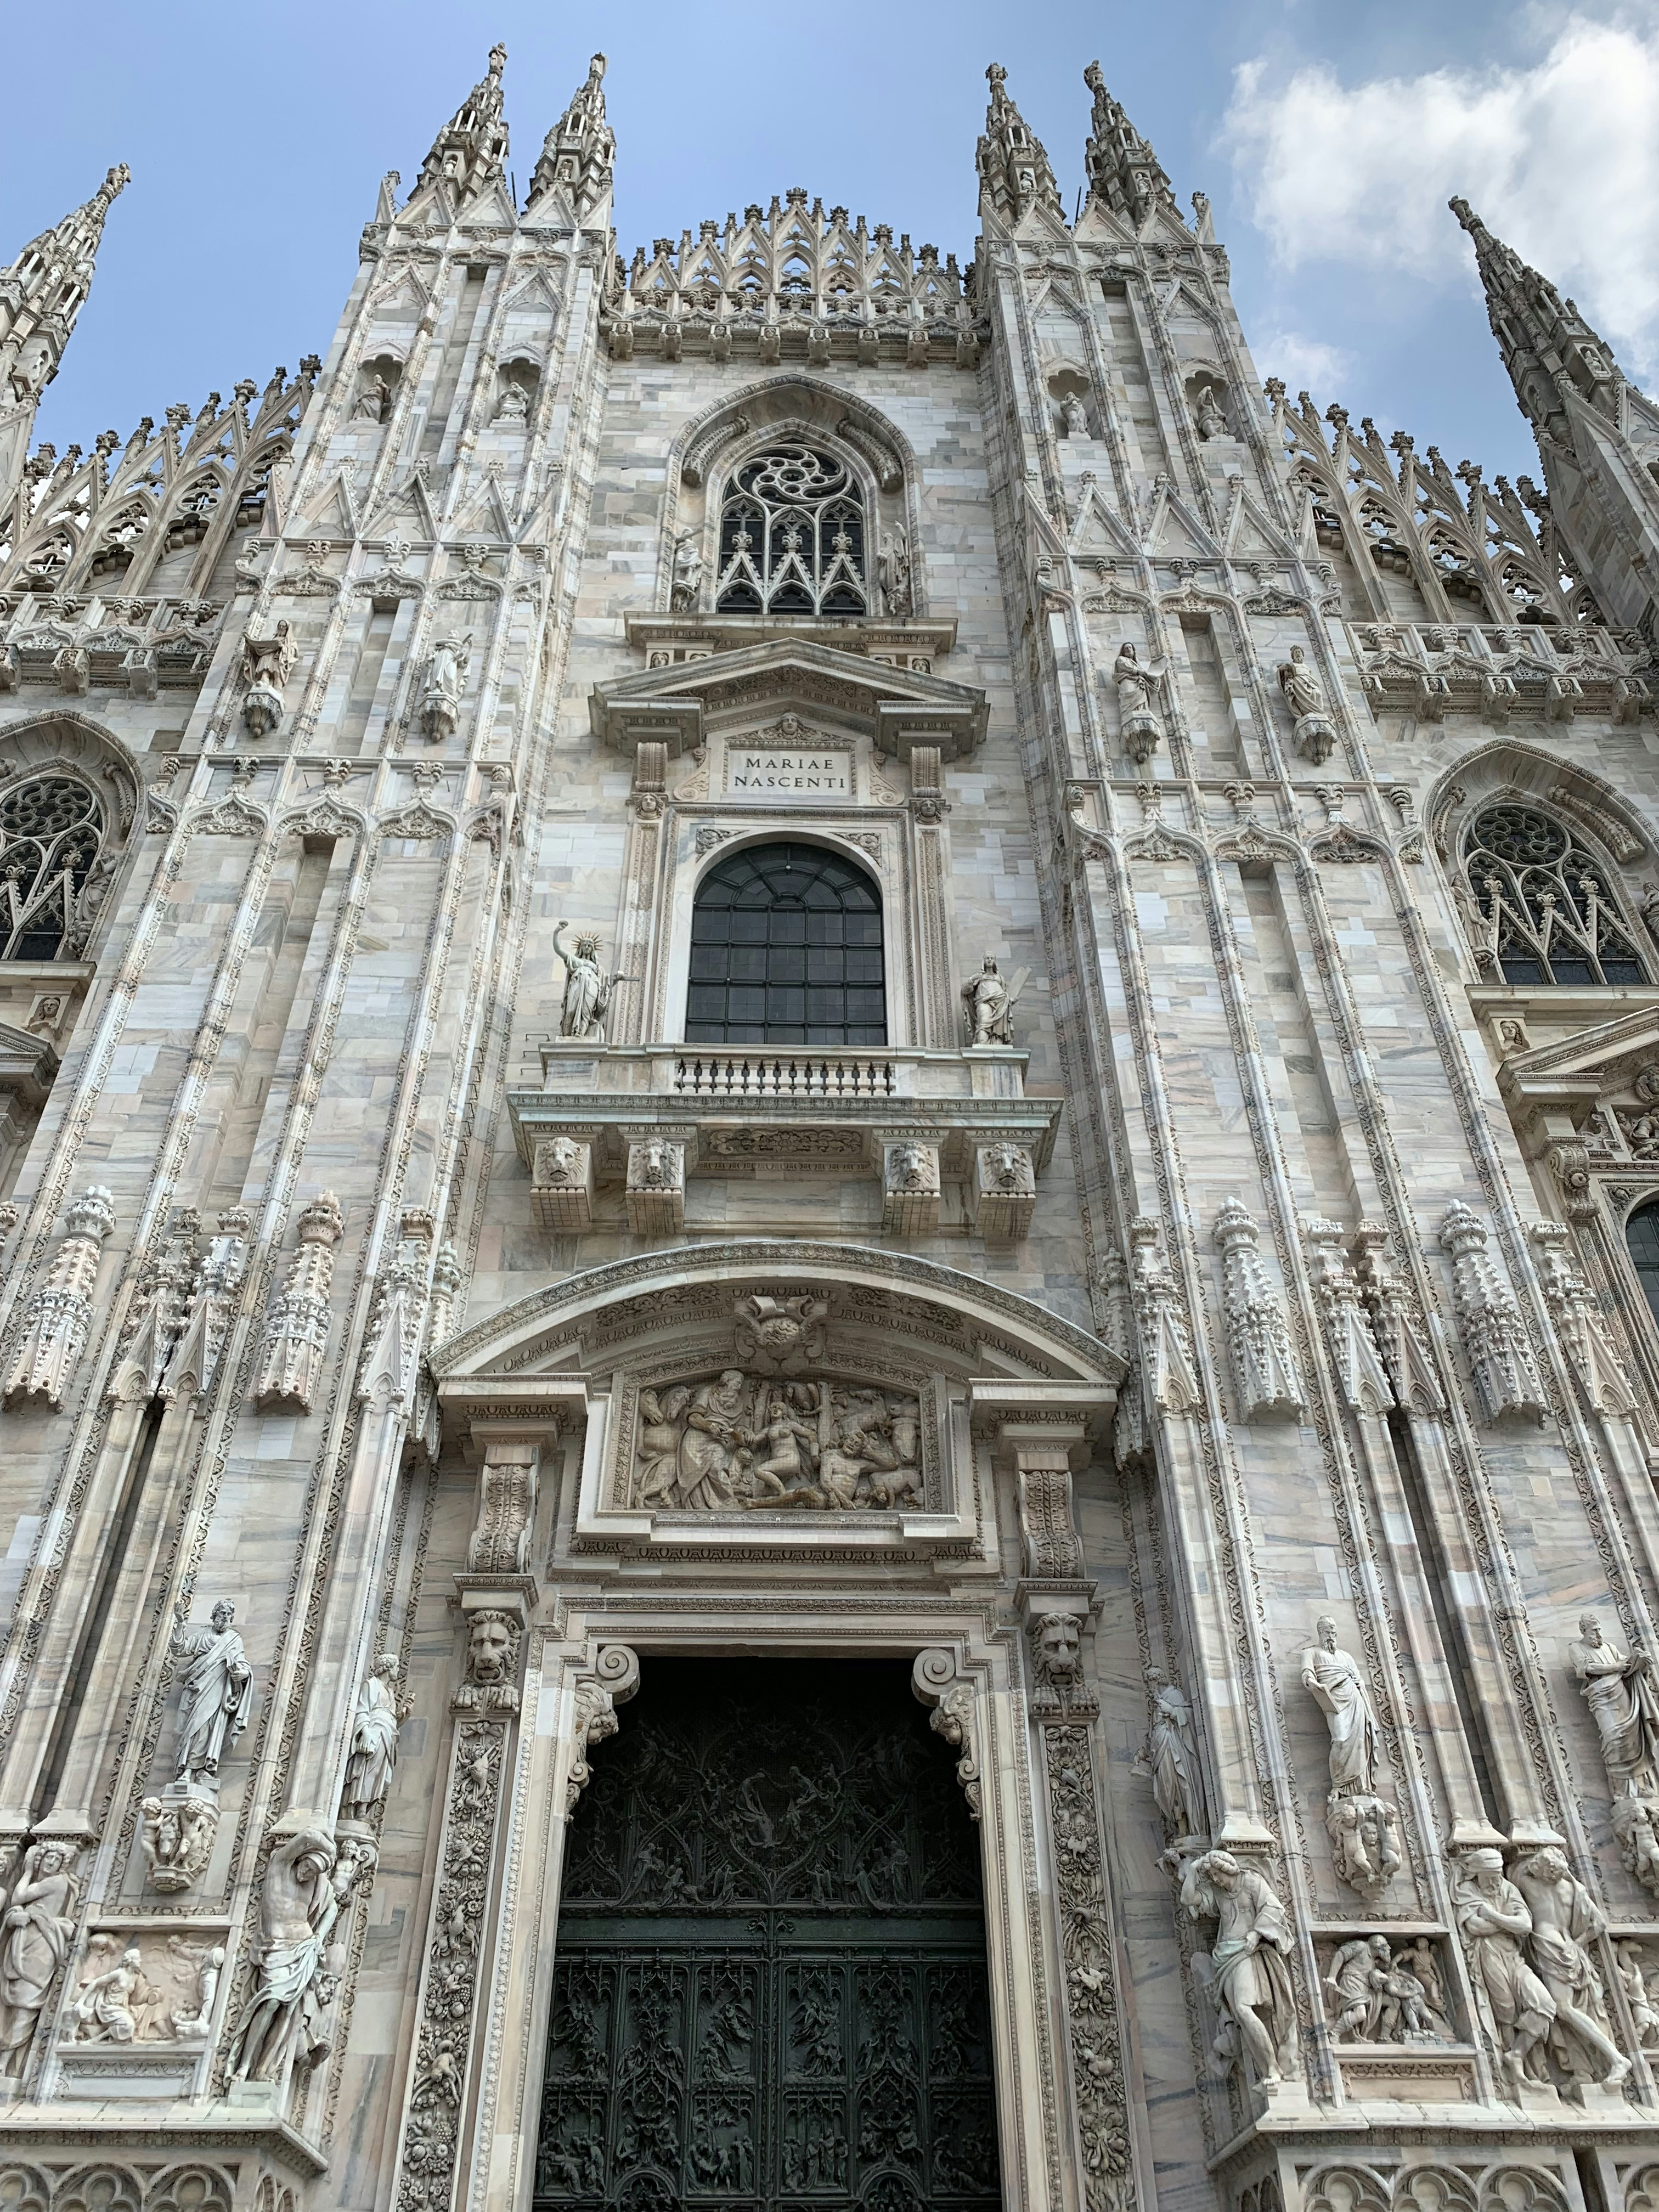 The imposing Duomo in Milan.